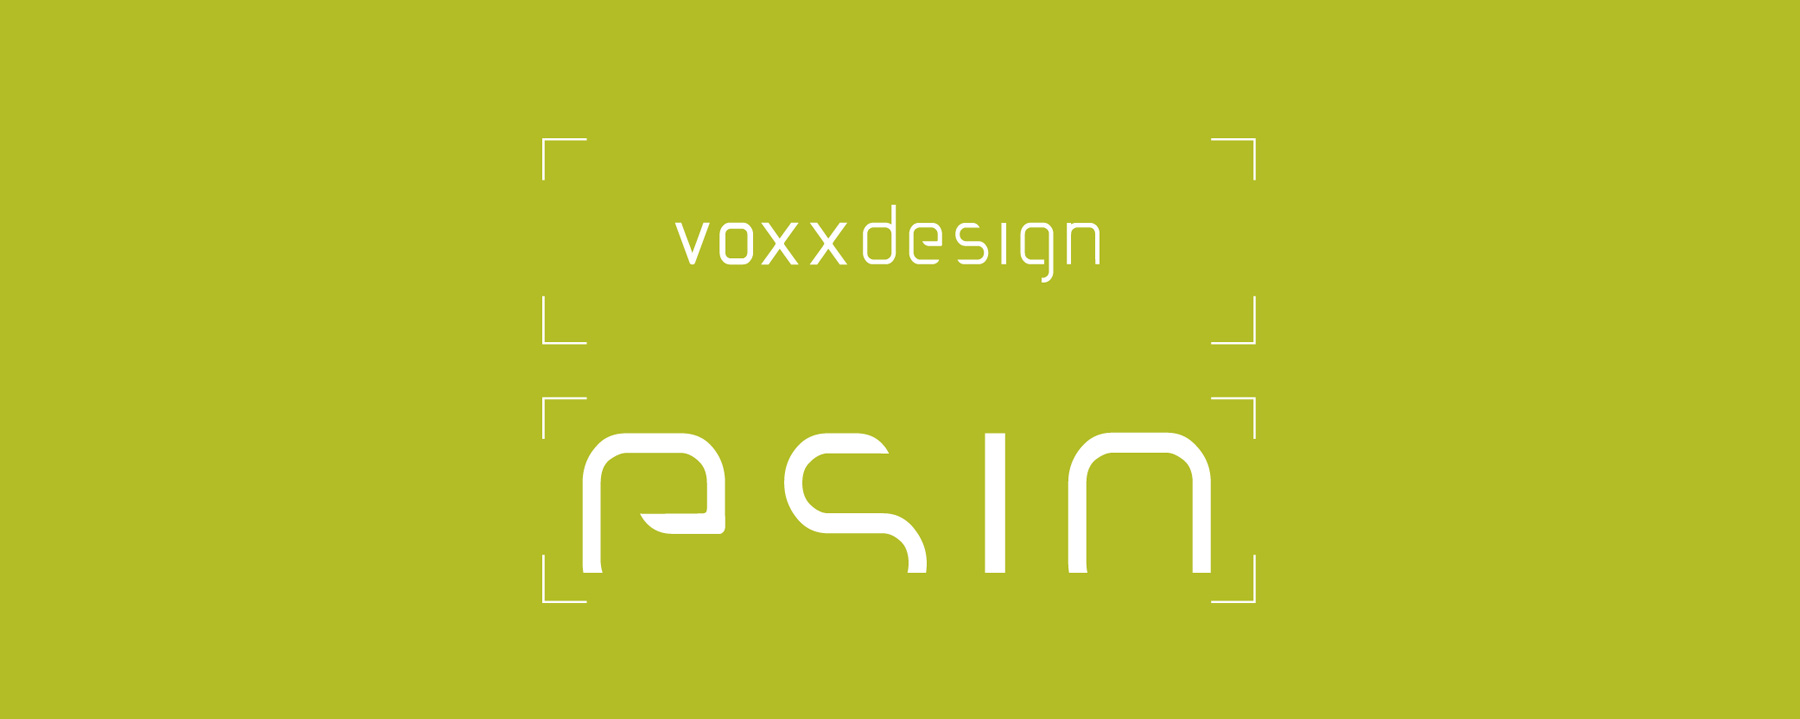 Logogestaltung für voxx design | Mannheim | by Ilyas Susever